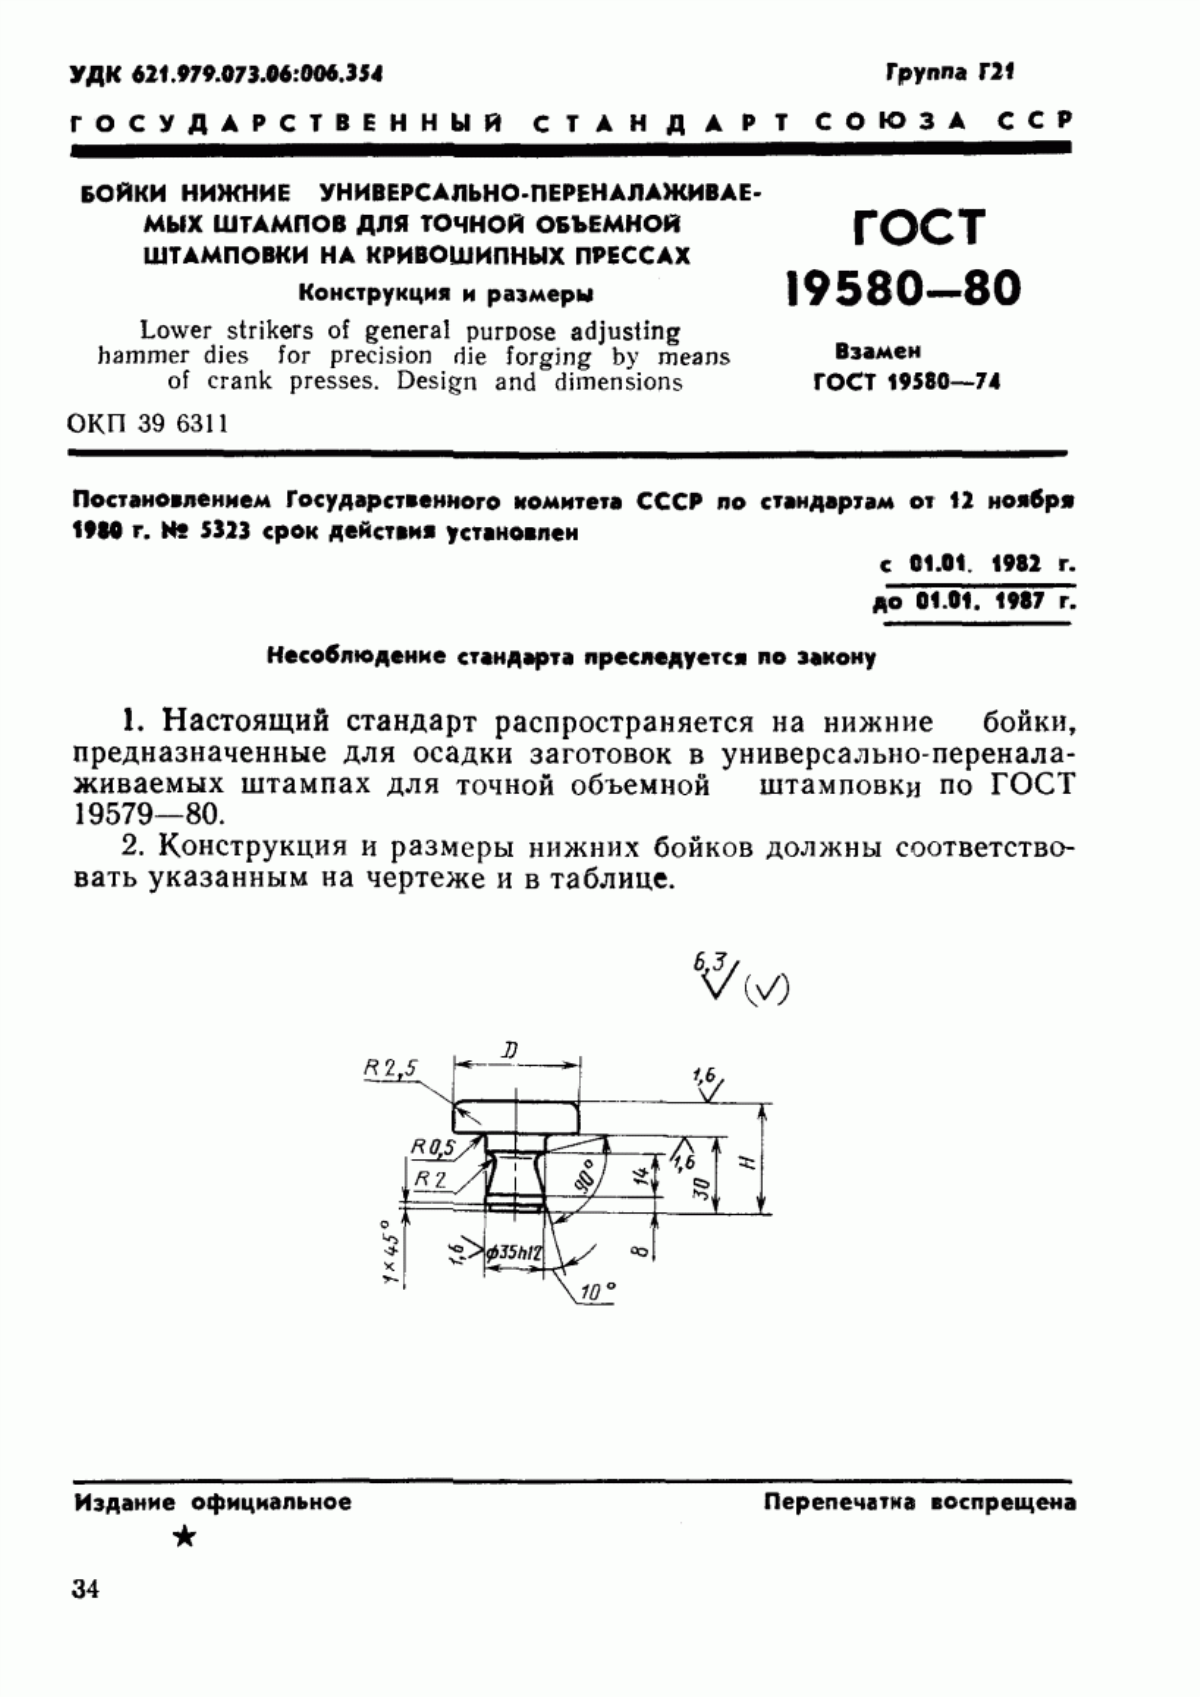 ГОСТ 19580-80 Бойки нижние универсально-переналаживаемых штампов для точной объемной штамповки на кривошипных прессах. Конструкция и размеры